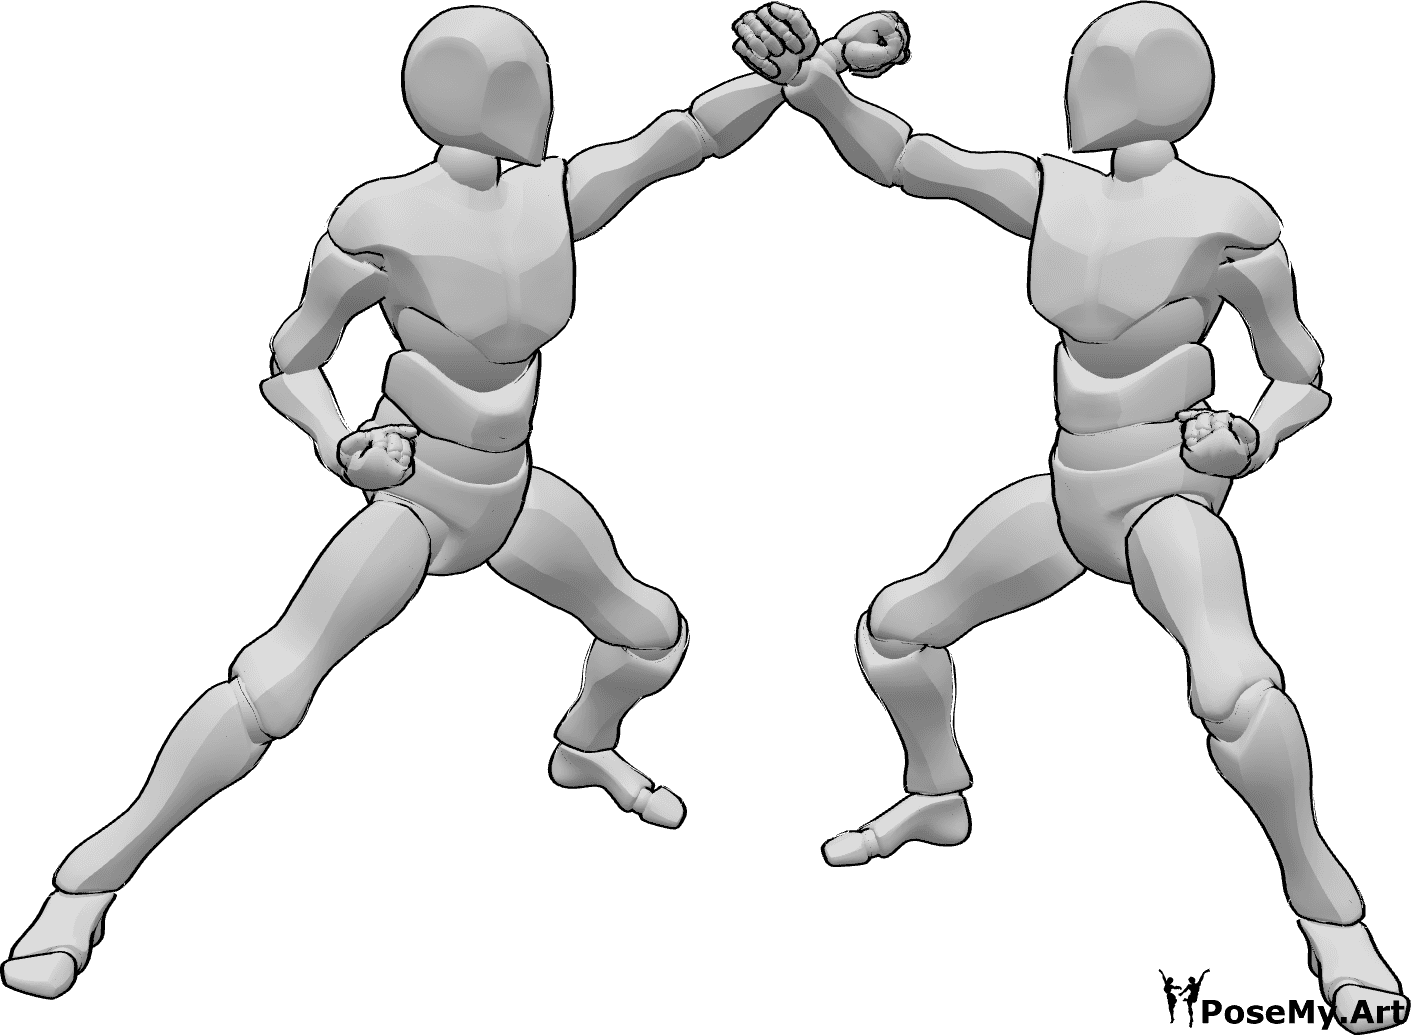 Referencia de poses- Dos hombres en pose de karate - Dos machos luchan en pose de karate